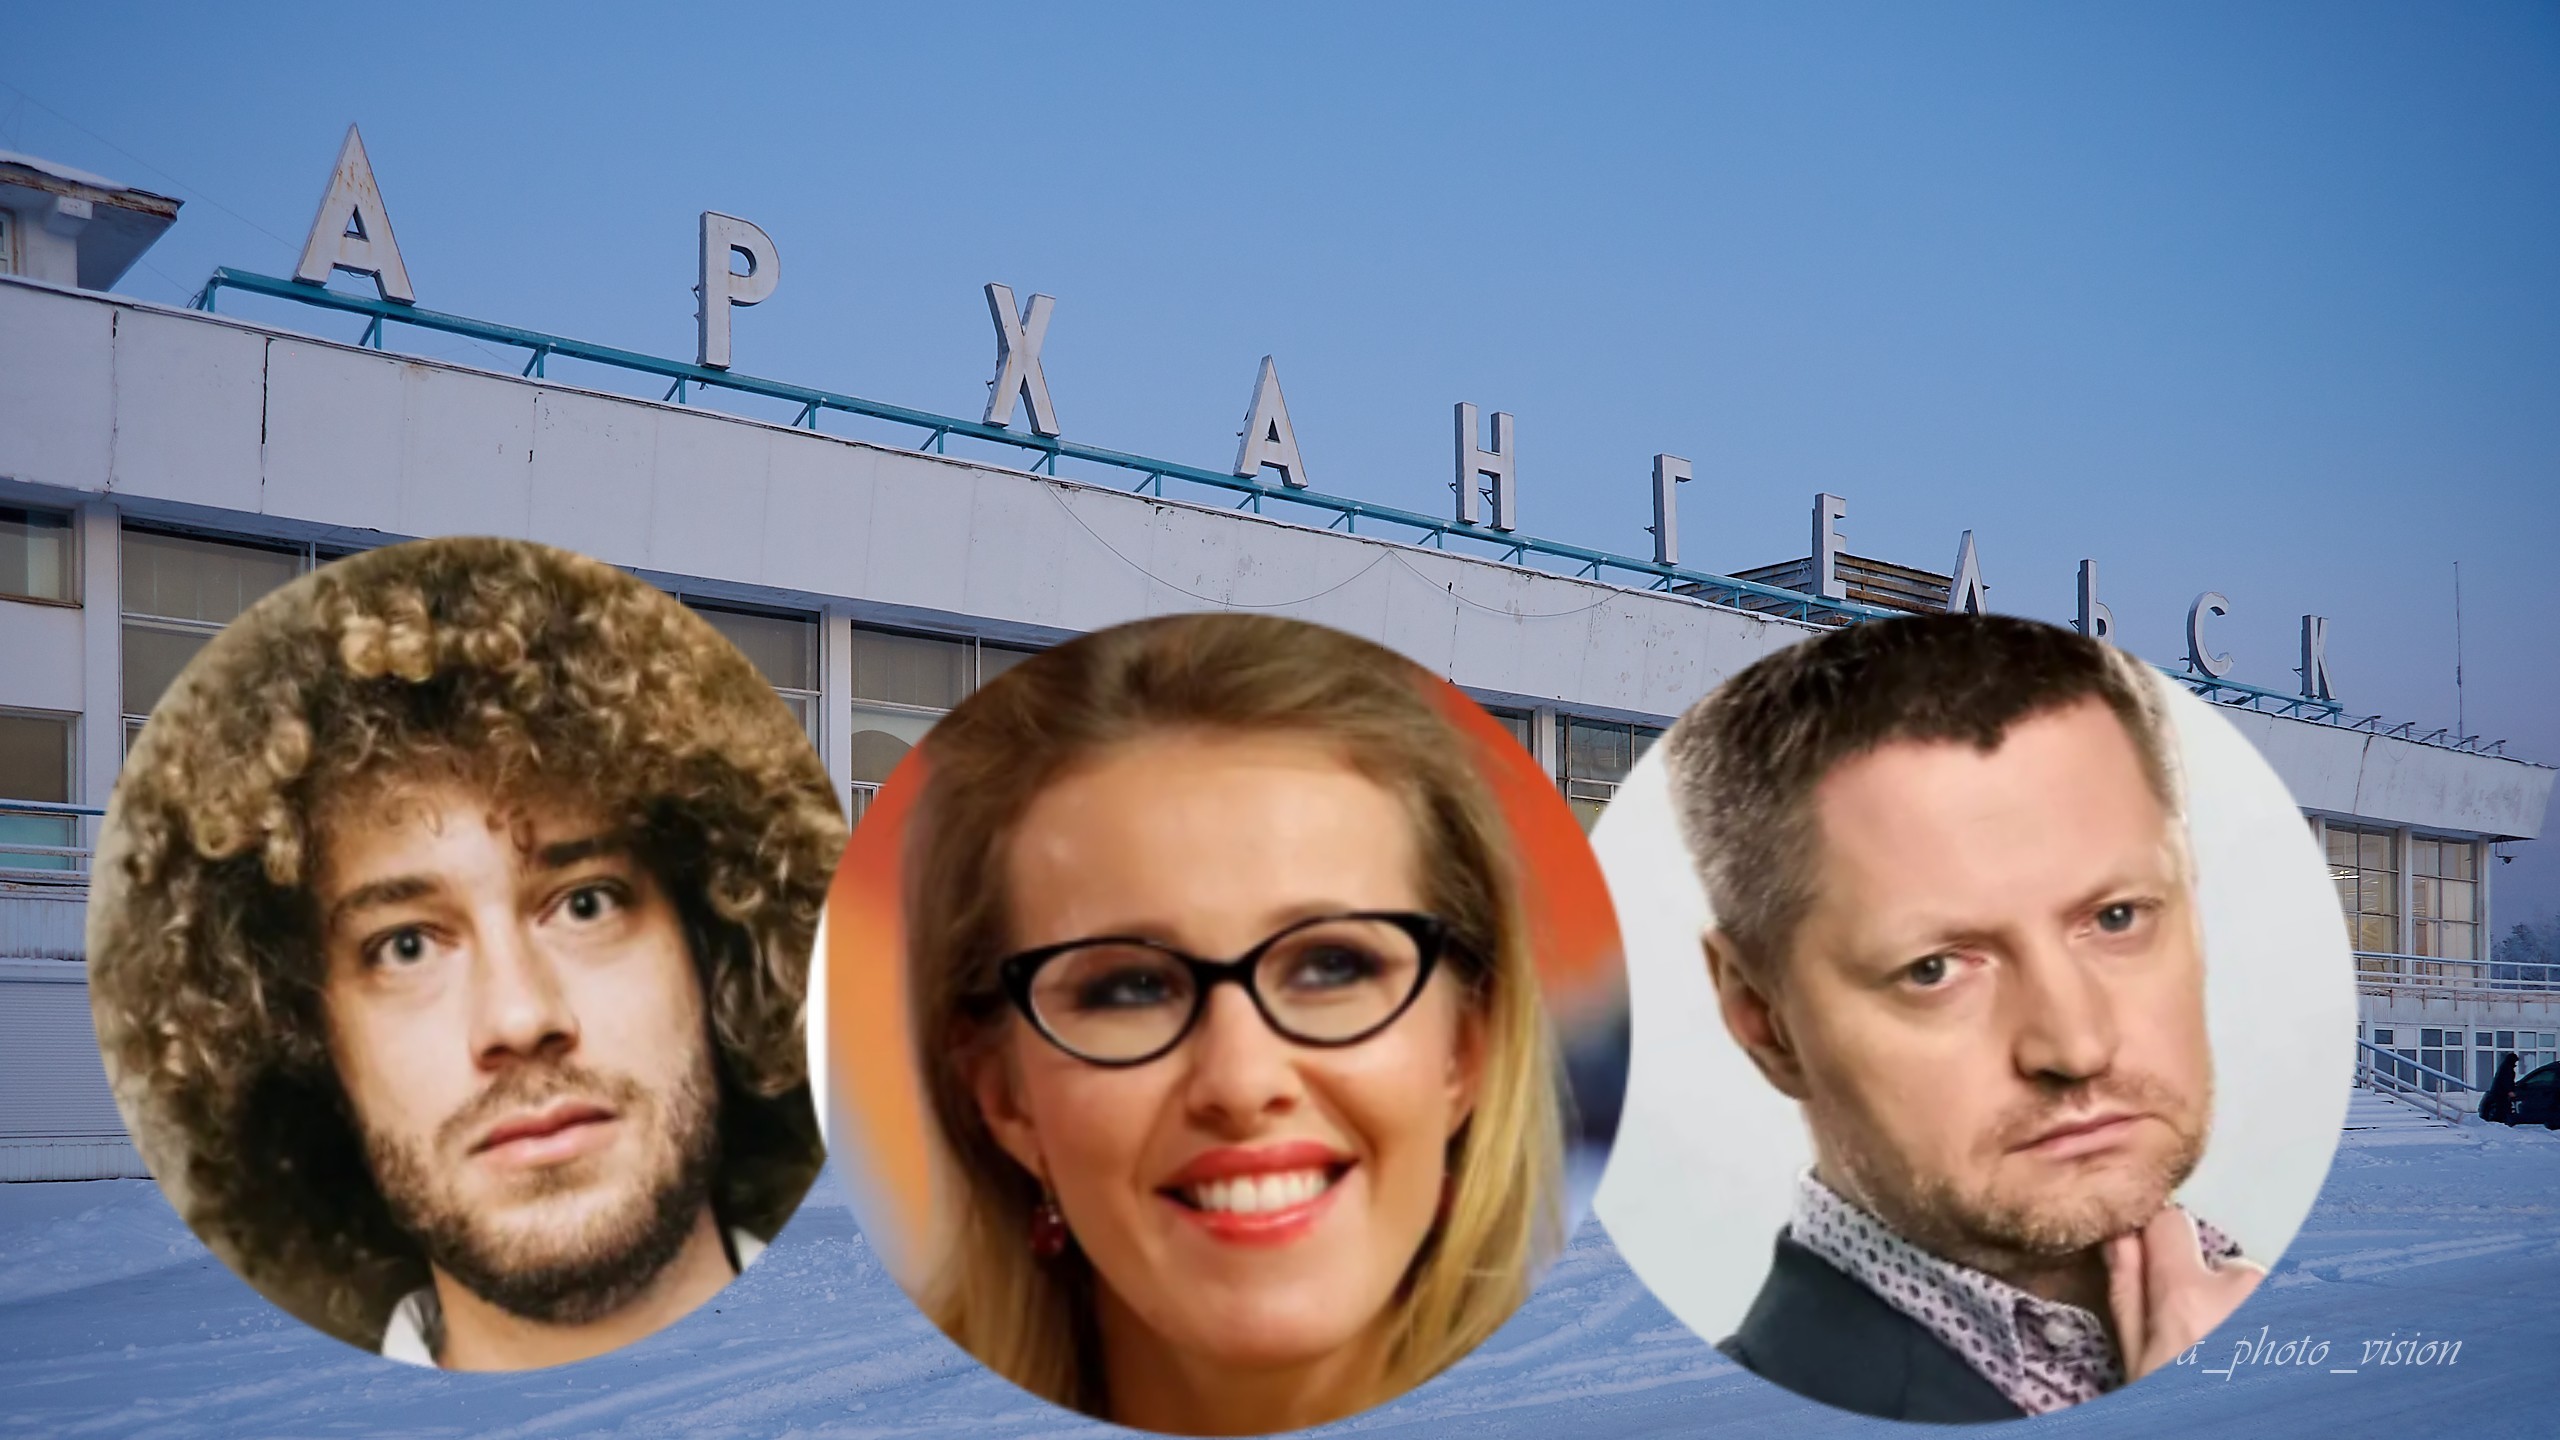  Архангельск не раз попал в поле зрения российских знаменитостей